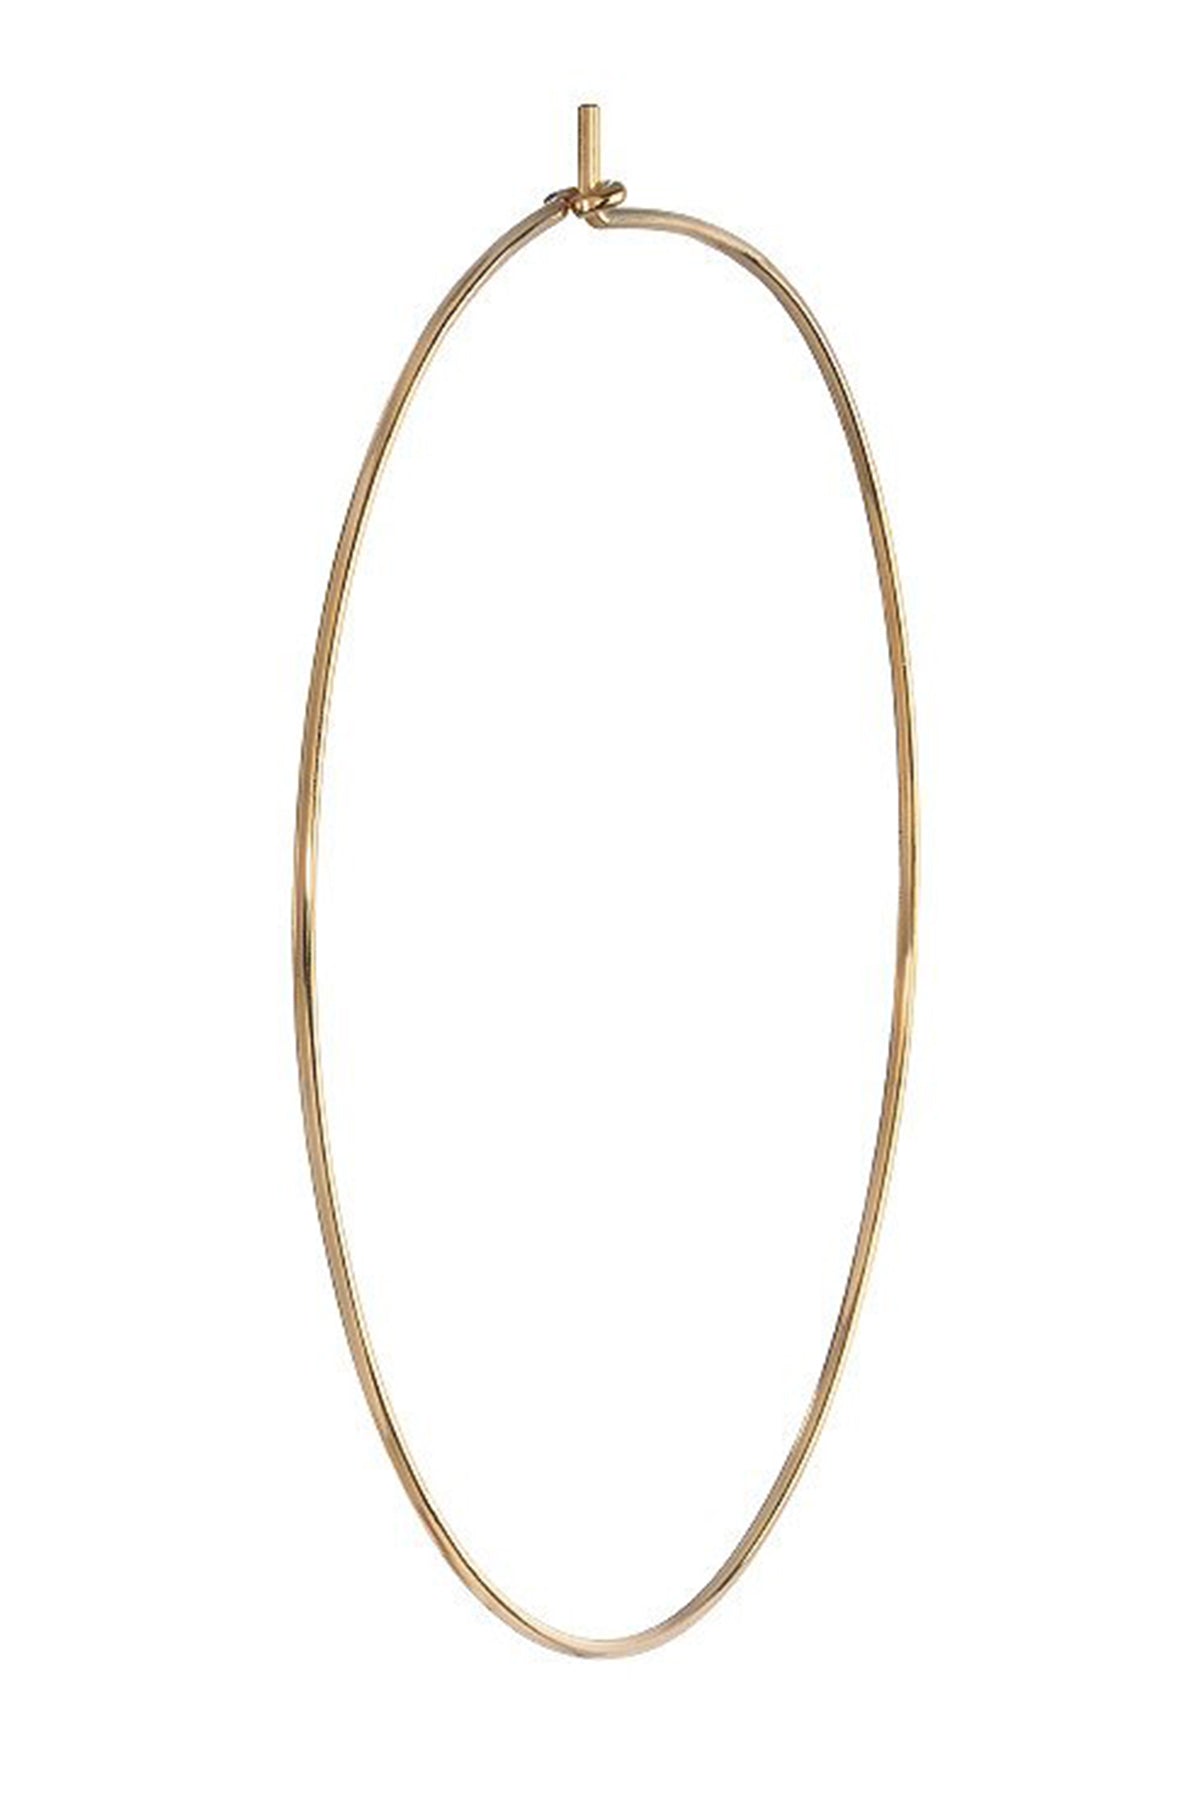   Large Hoop Earrings by Bychari Gold 2 